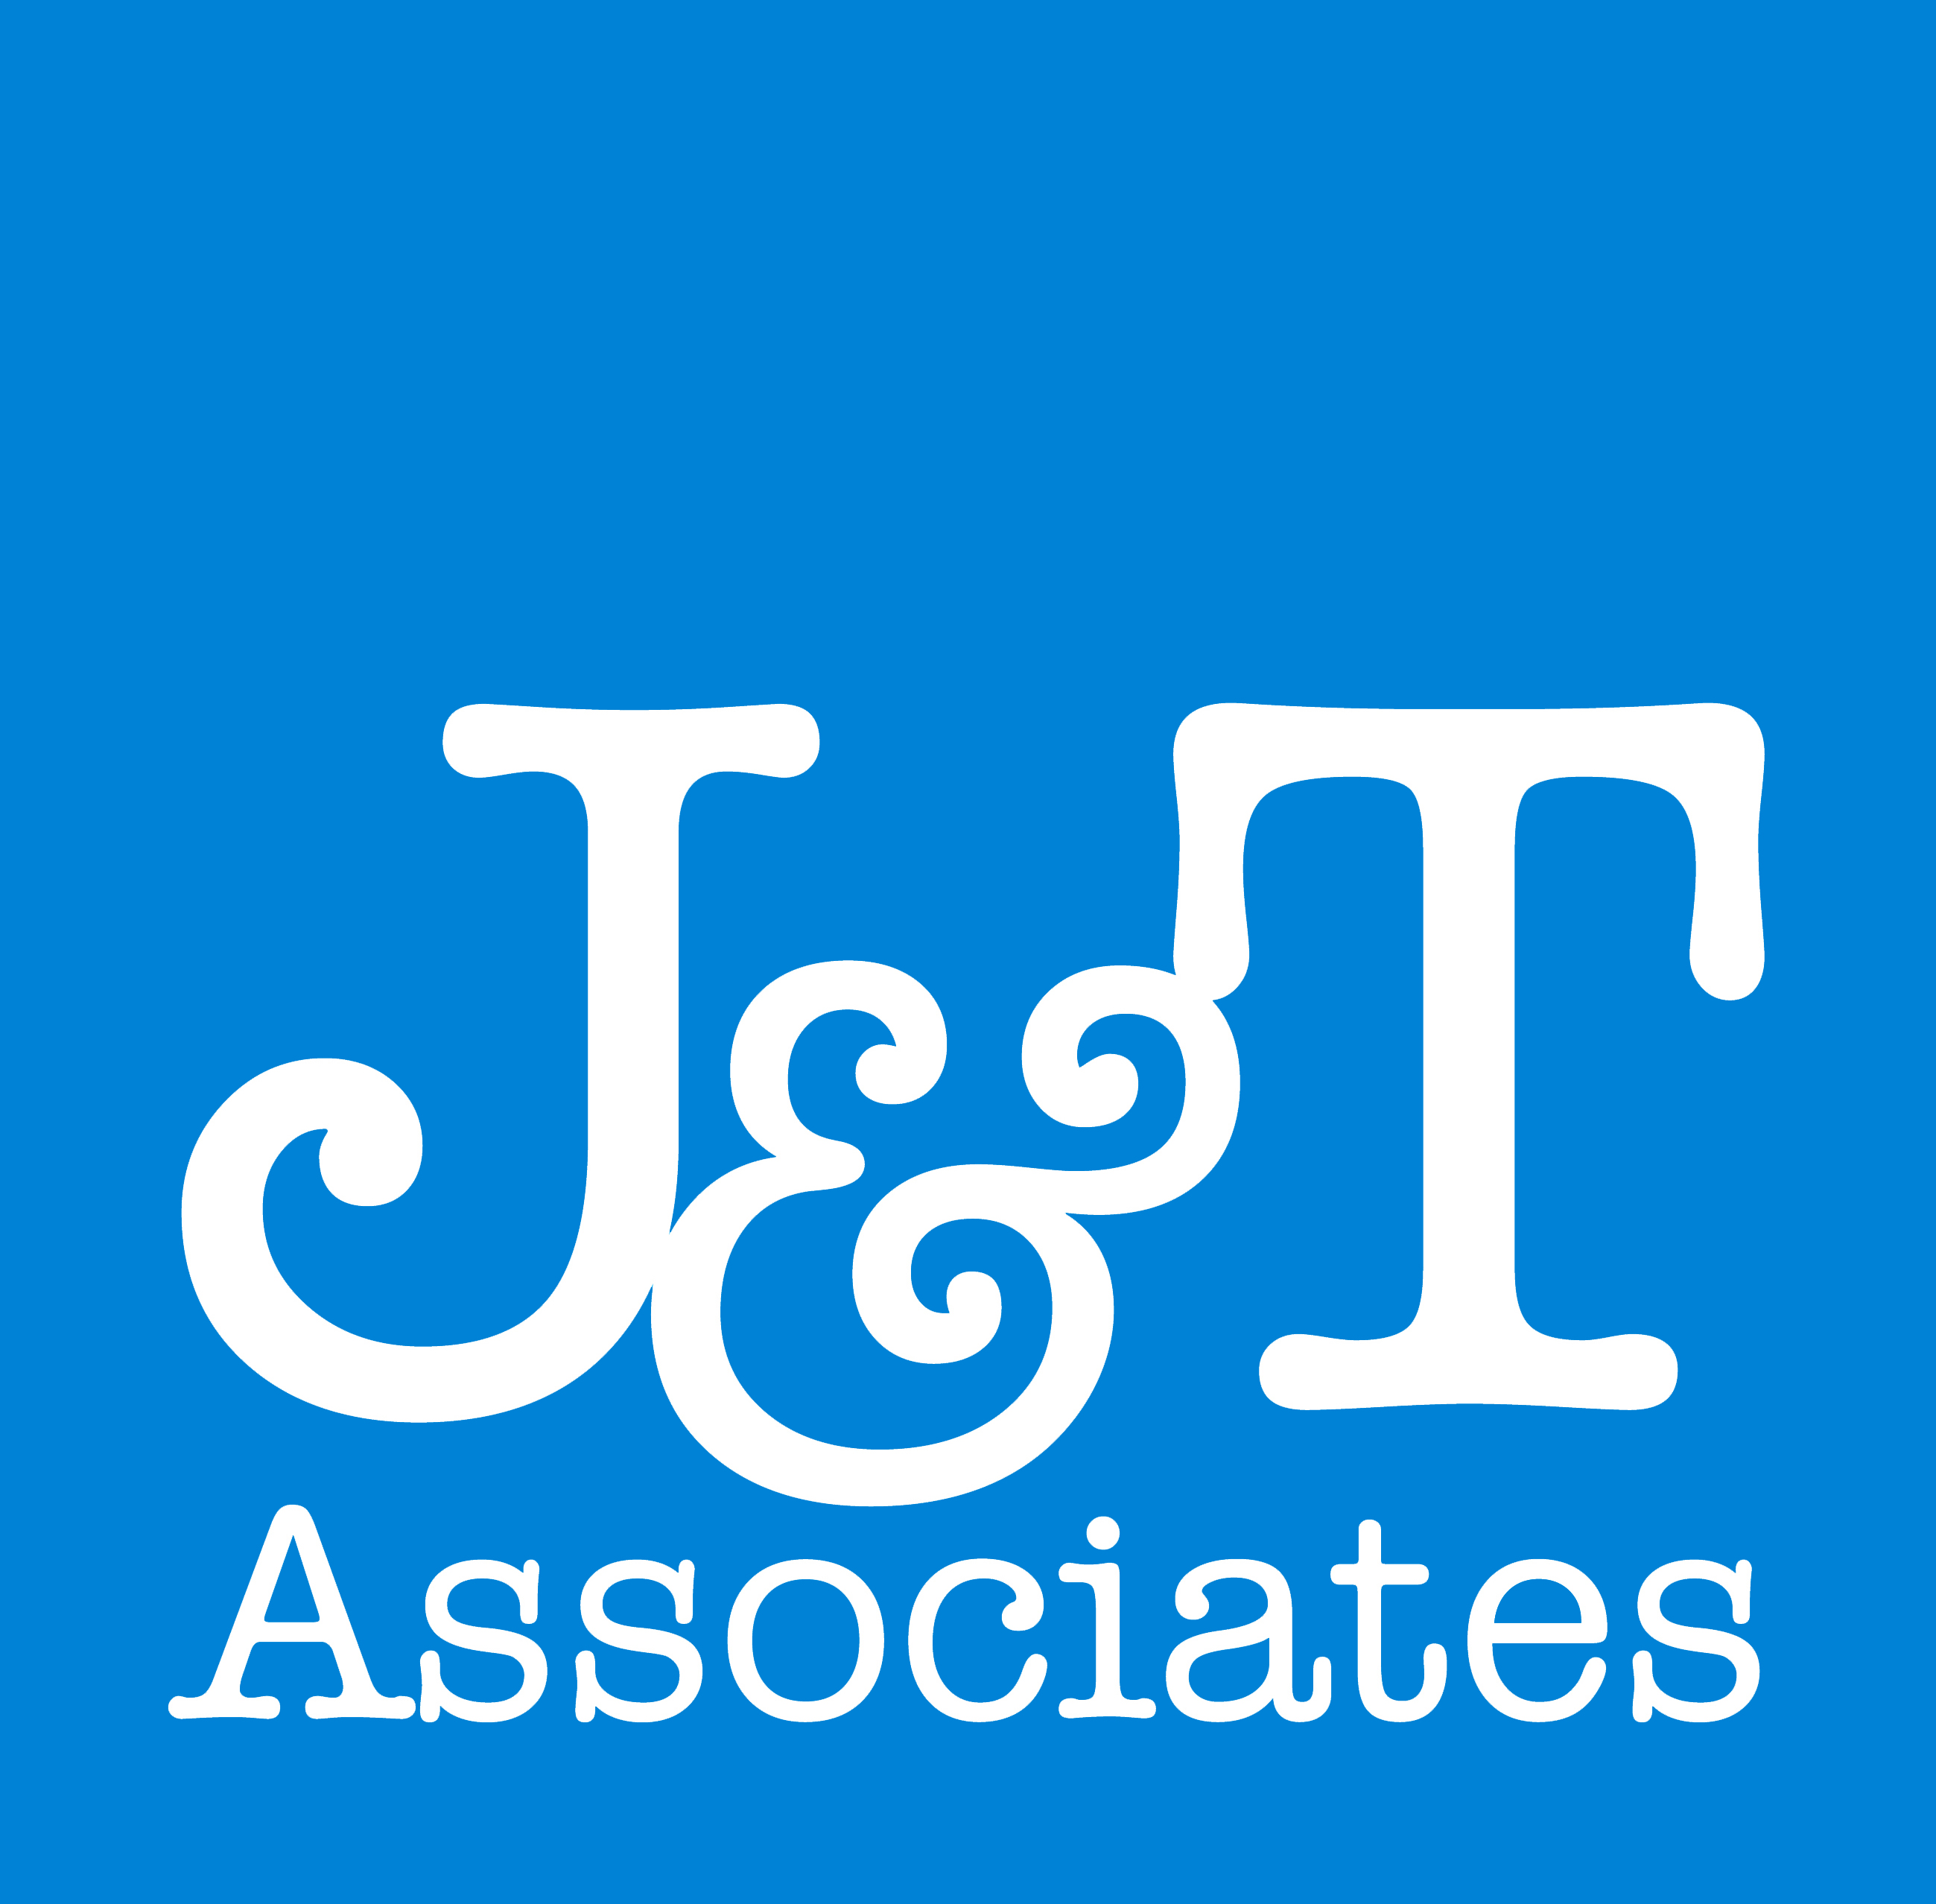 J&T Associates Pvt. Ltd.